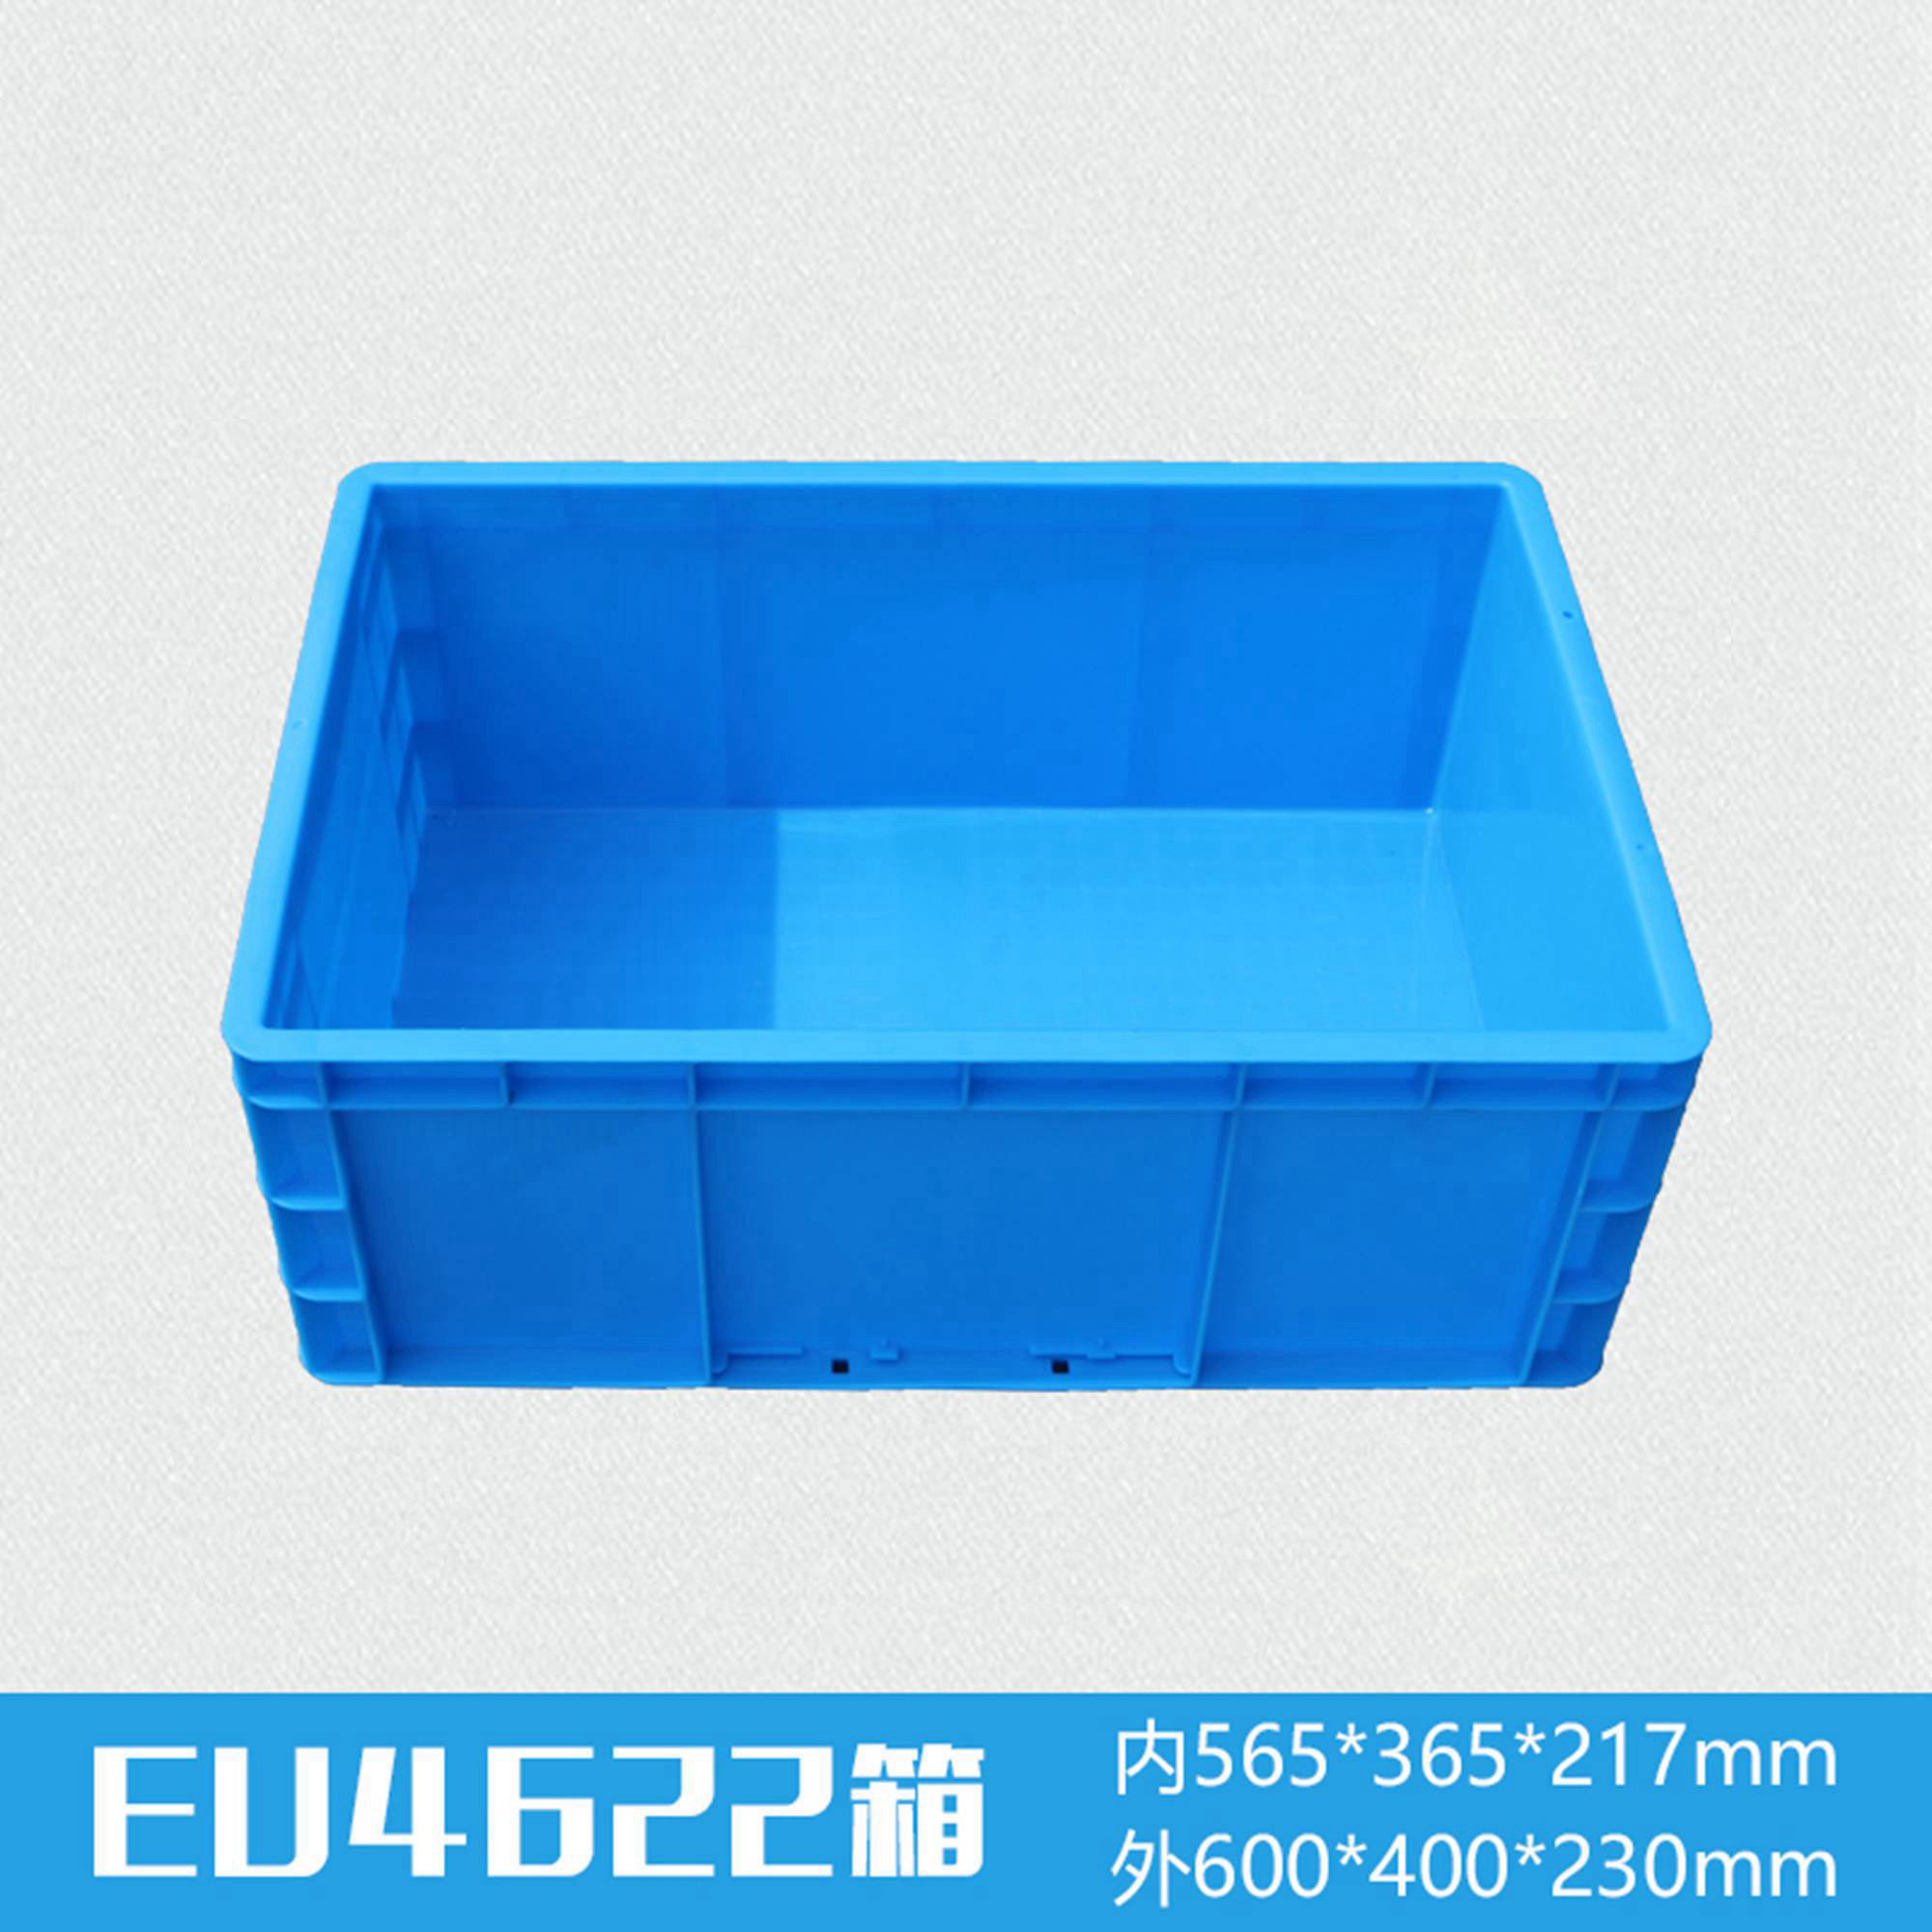 轩盛塑业EU4622塑料物流箱